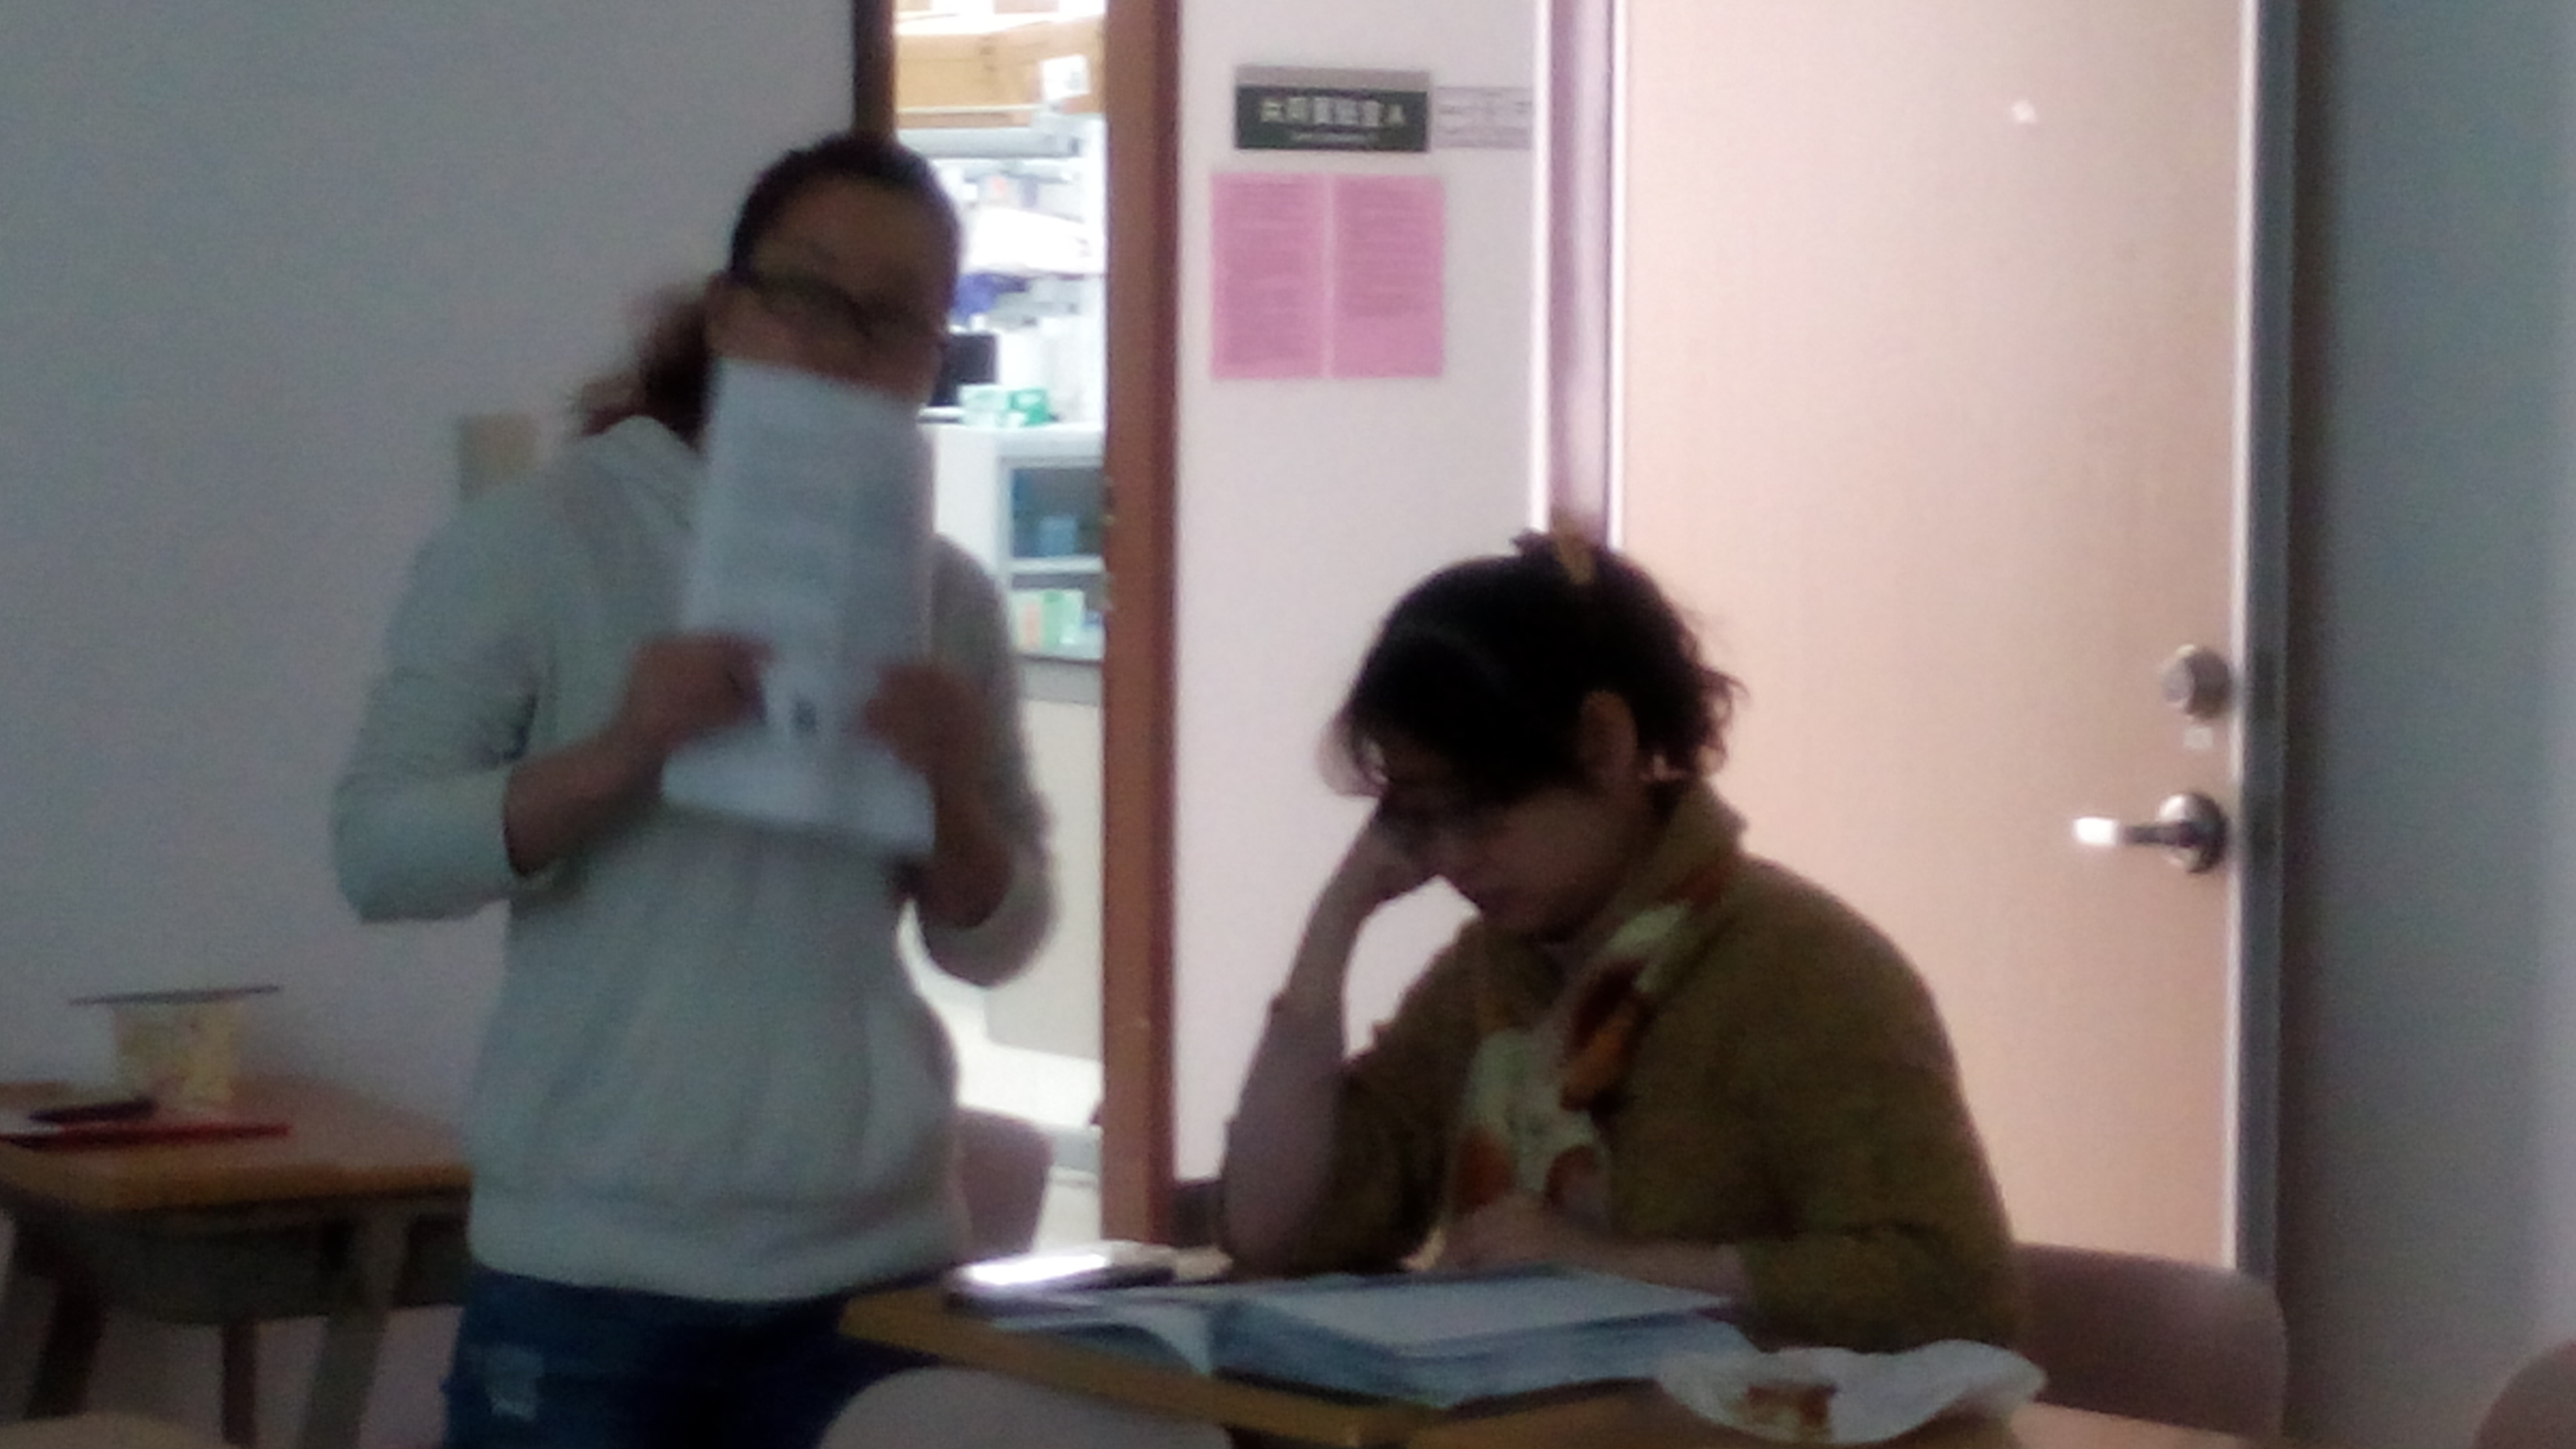 05/29老師參與討論考照內容，並提出問題反思